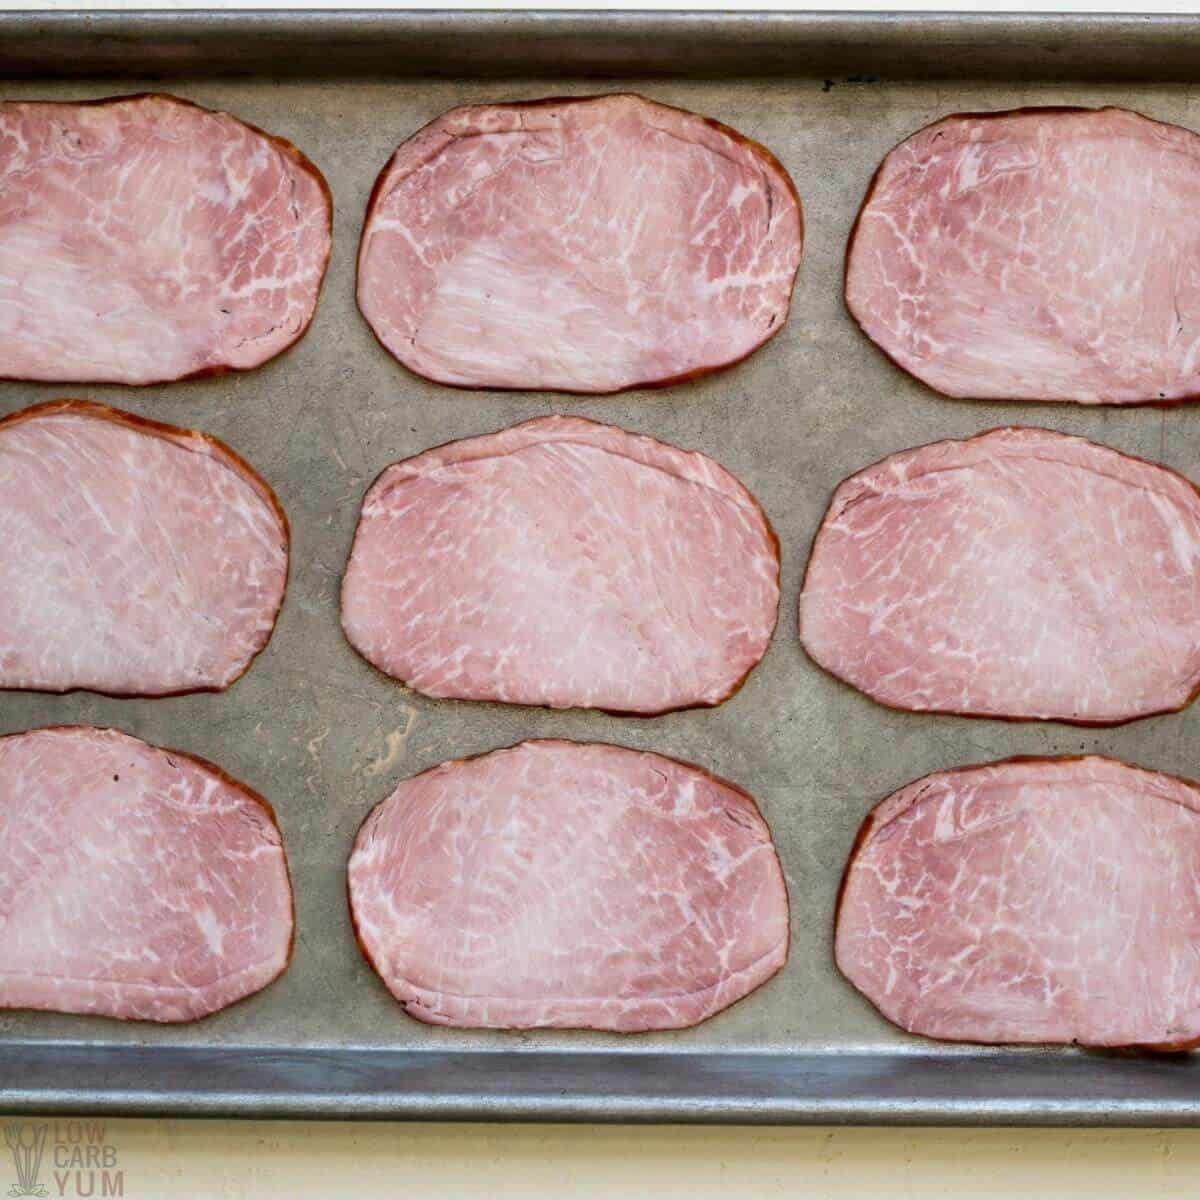 ham slices on baking sheet